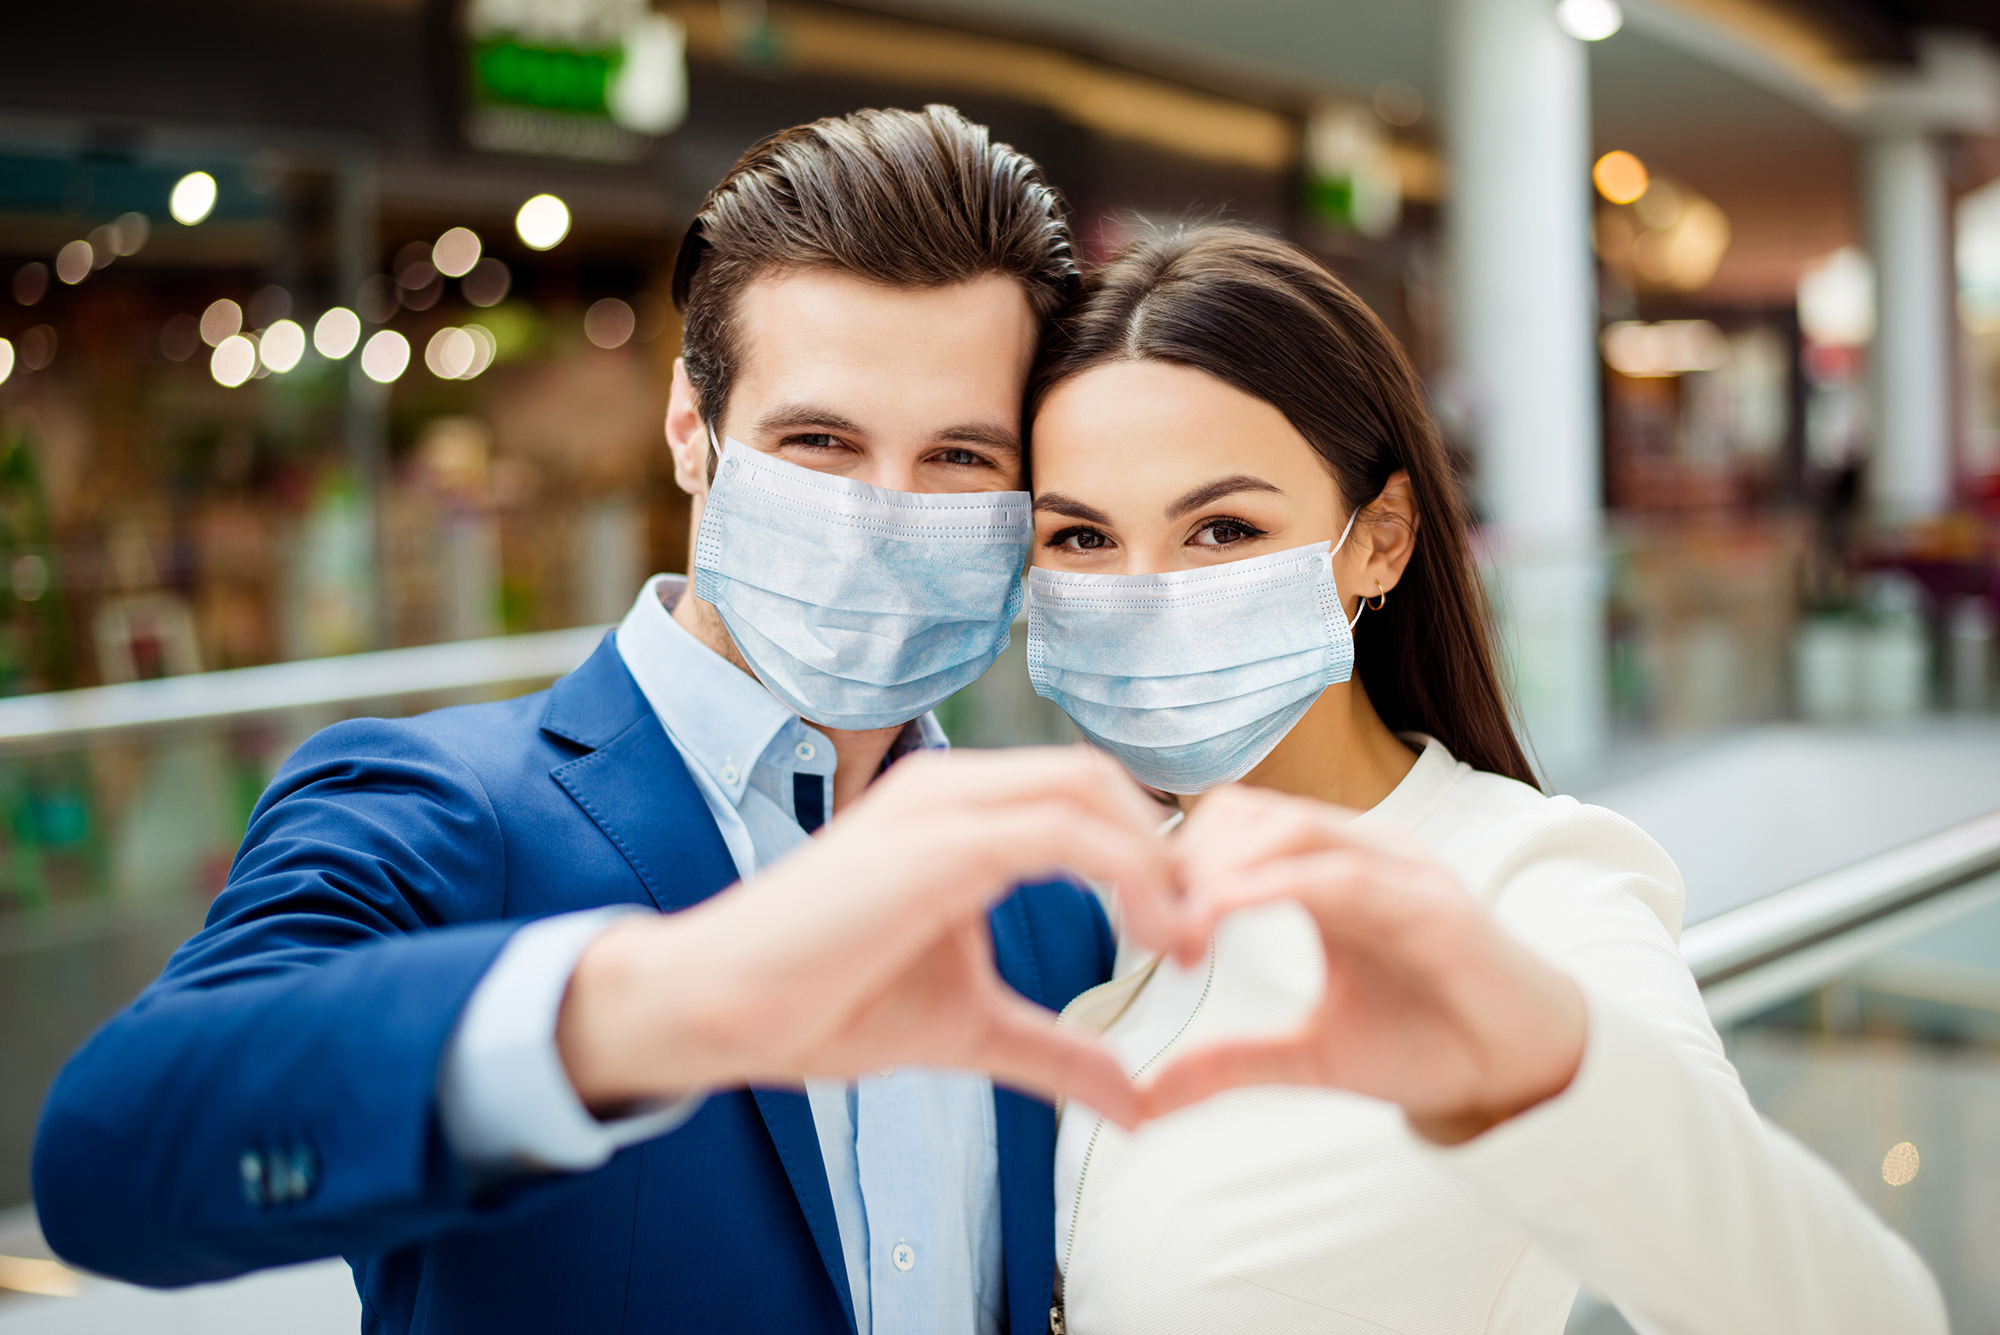 Dating in the Coronavirus Pandemic